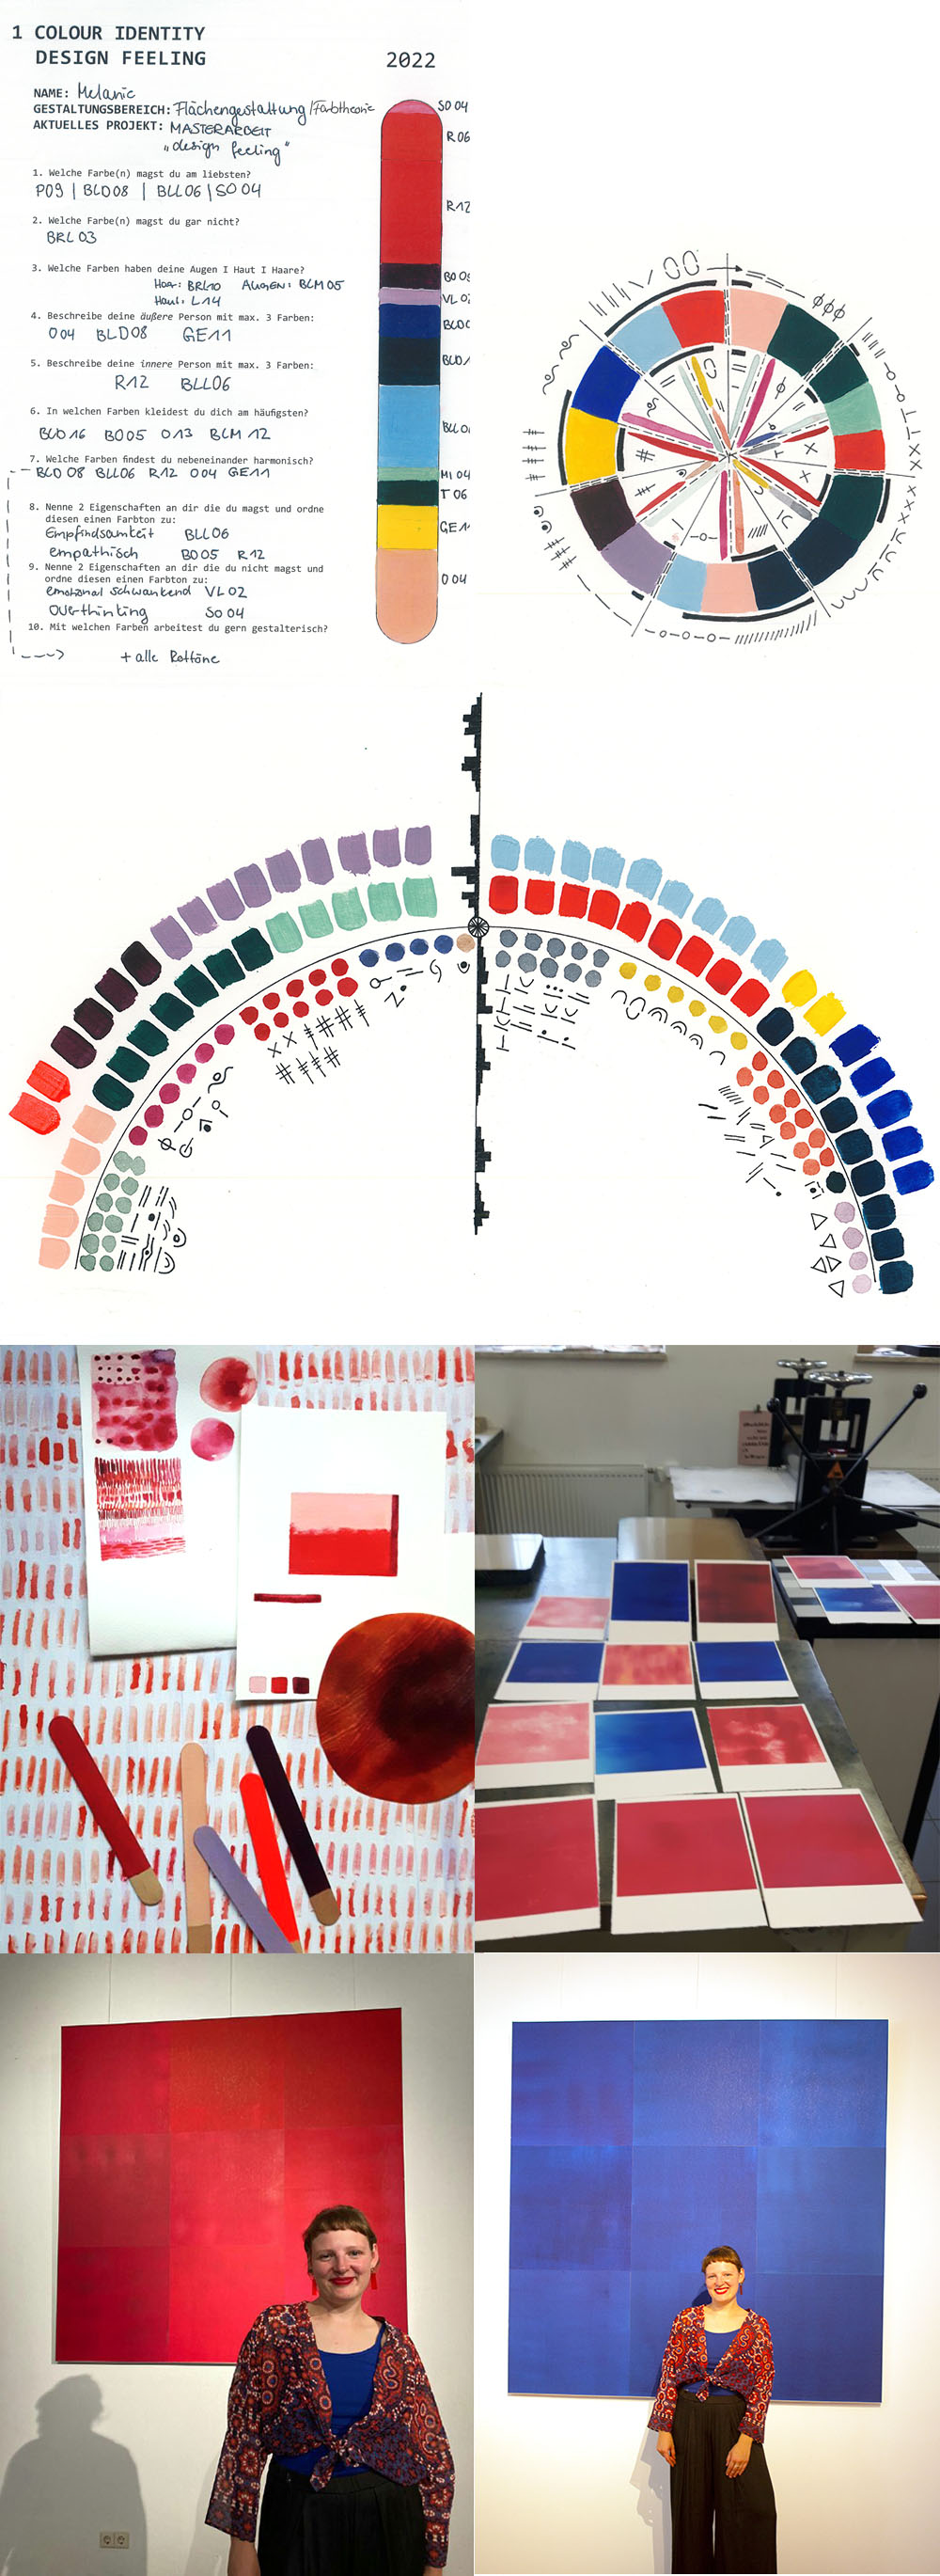 Foto: Master-Abschlussarbeit "Design-Feeling" von Melanie Müller, Fachrichtung Textilkunst/Textildesign, 2022, Collage